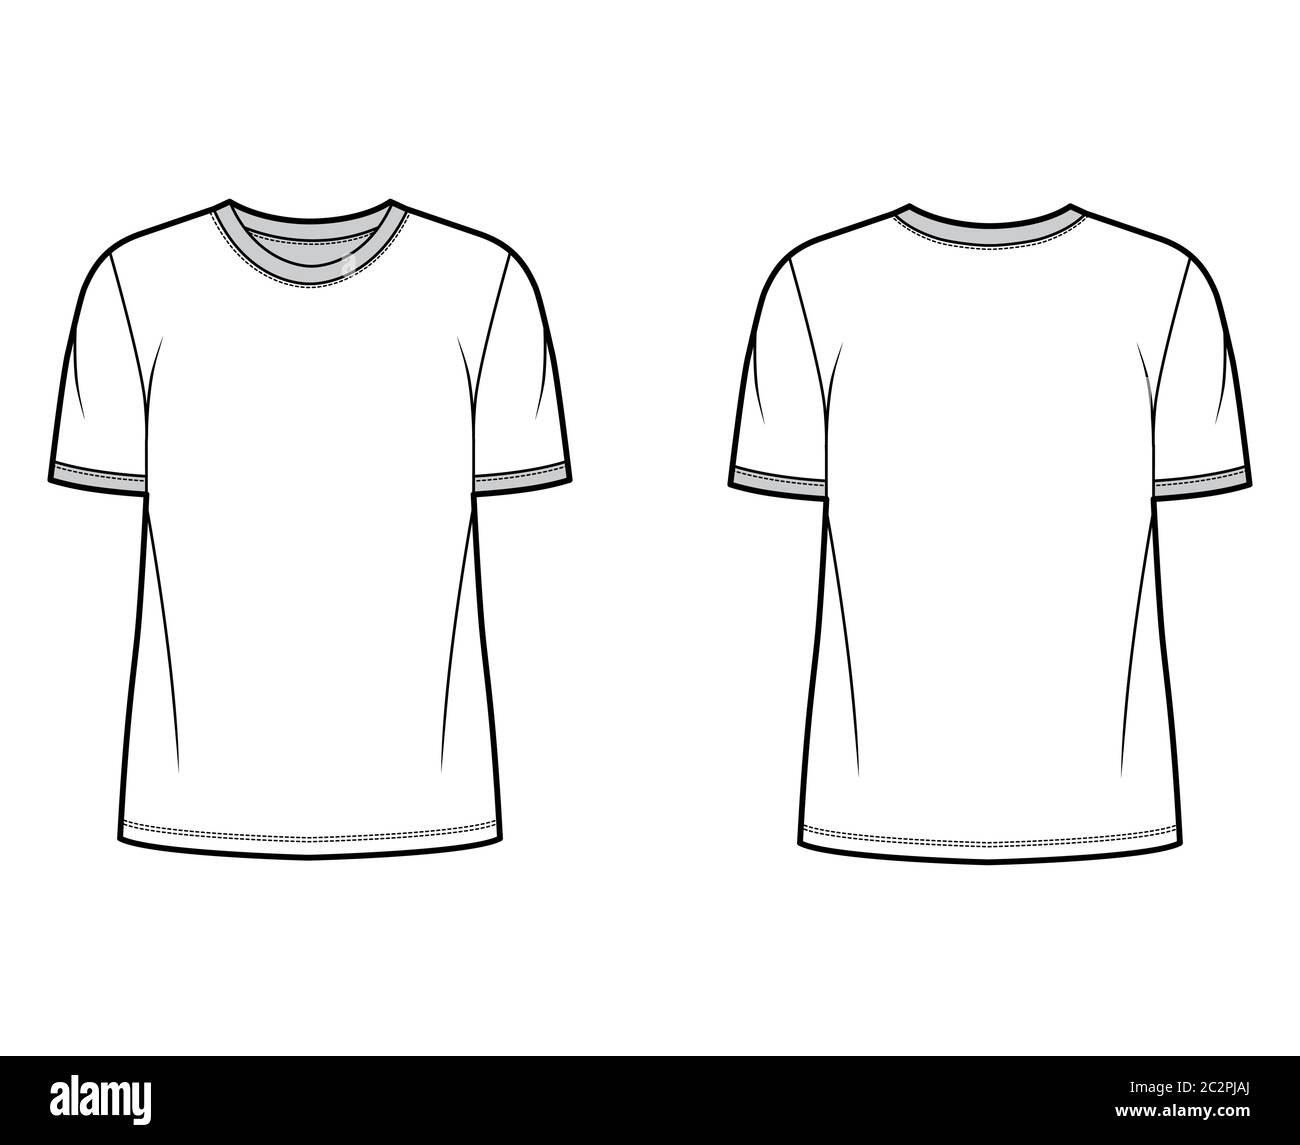 Tshirt Tanquinho  Cute tshirt designs, Free t shirt design, Abs shirt